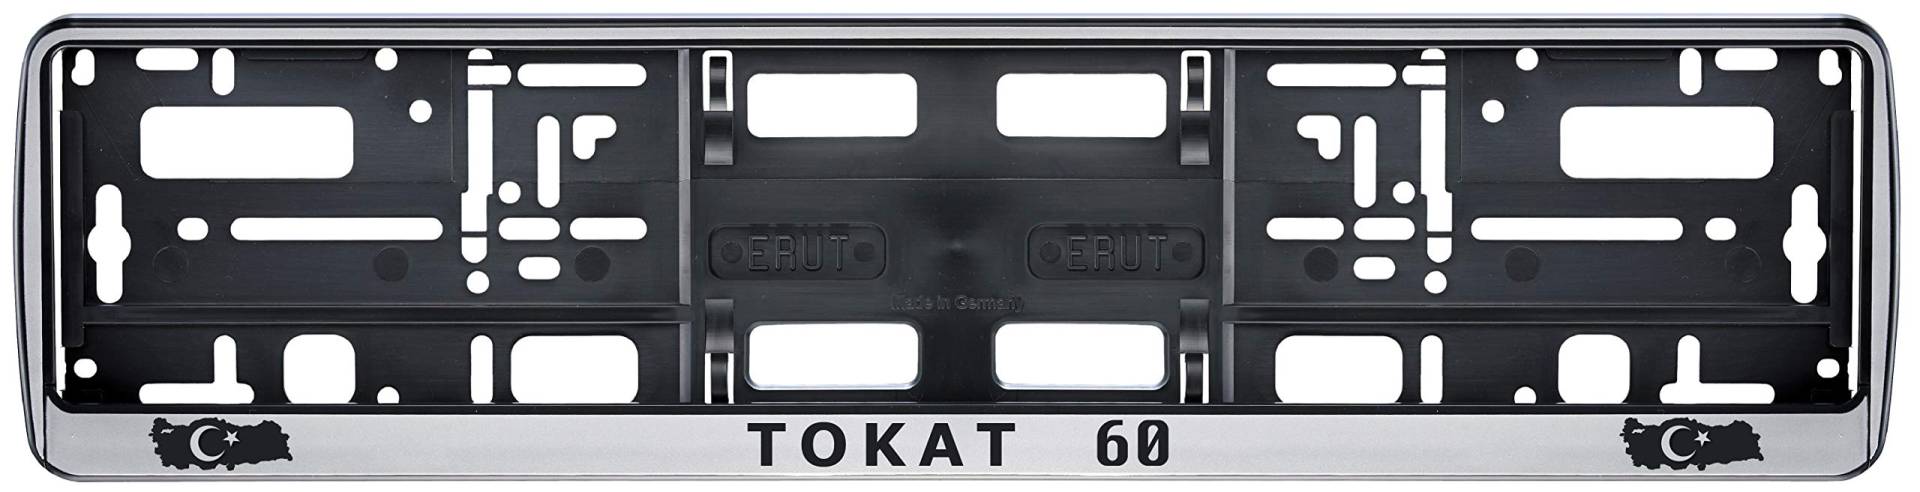 aina Auto Kennzeichenhalter in der Farbe Silber/Schwarz Nummernschildhalterung Auto, Nummernschildhalter Türkei Flagge 60 Tokat 2 Stück von Aina